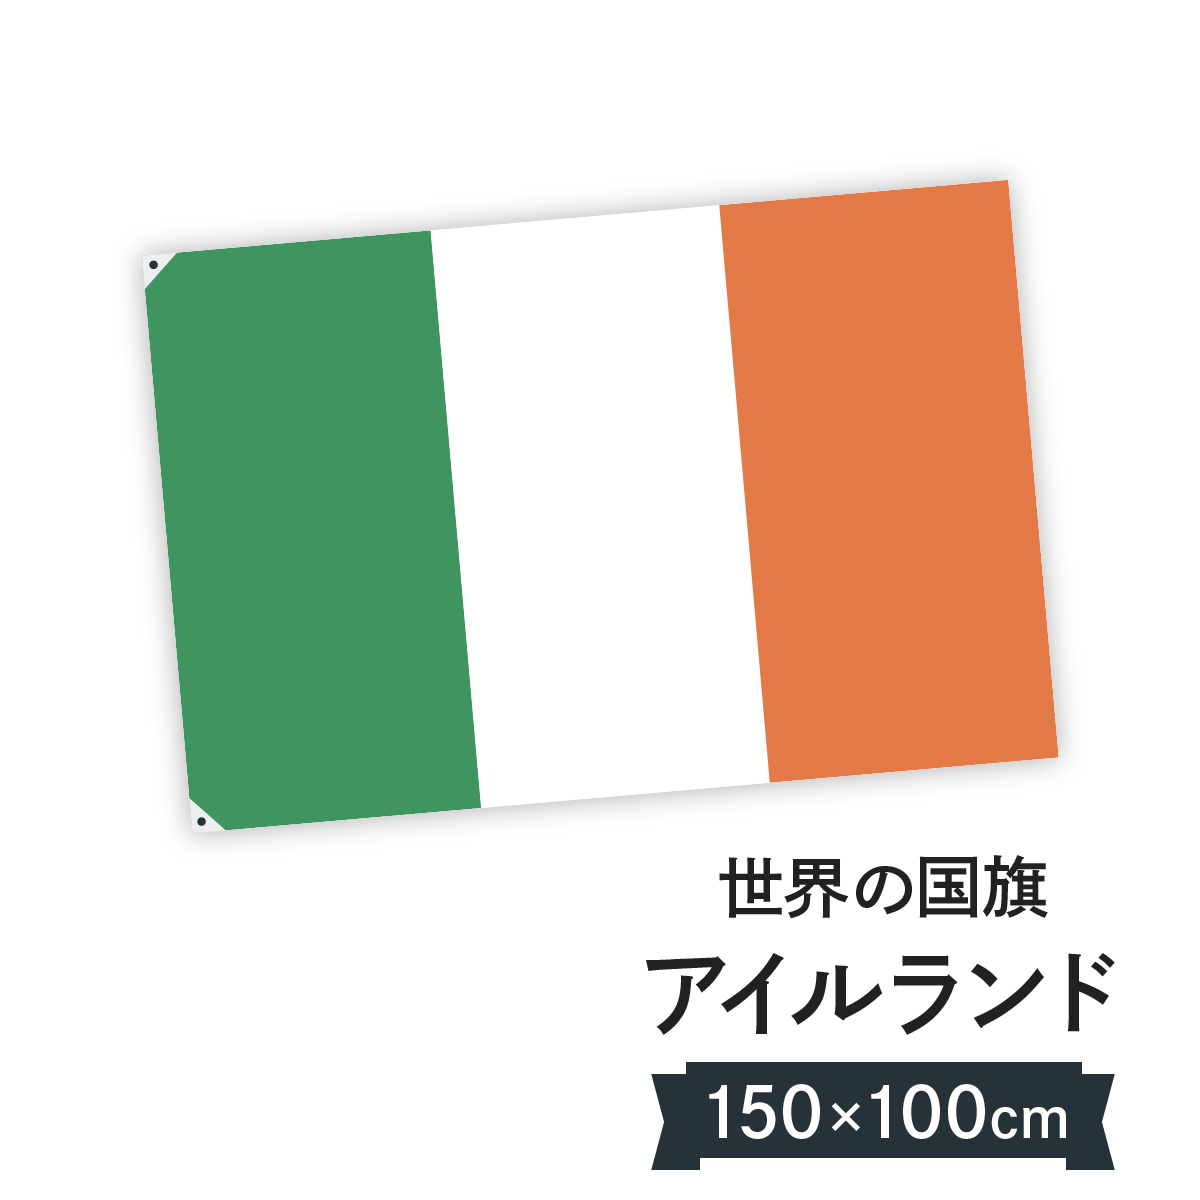 楽天市場 アイルランド 国旗 W150cm H100cm グッズプロ